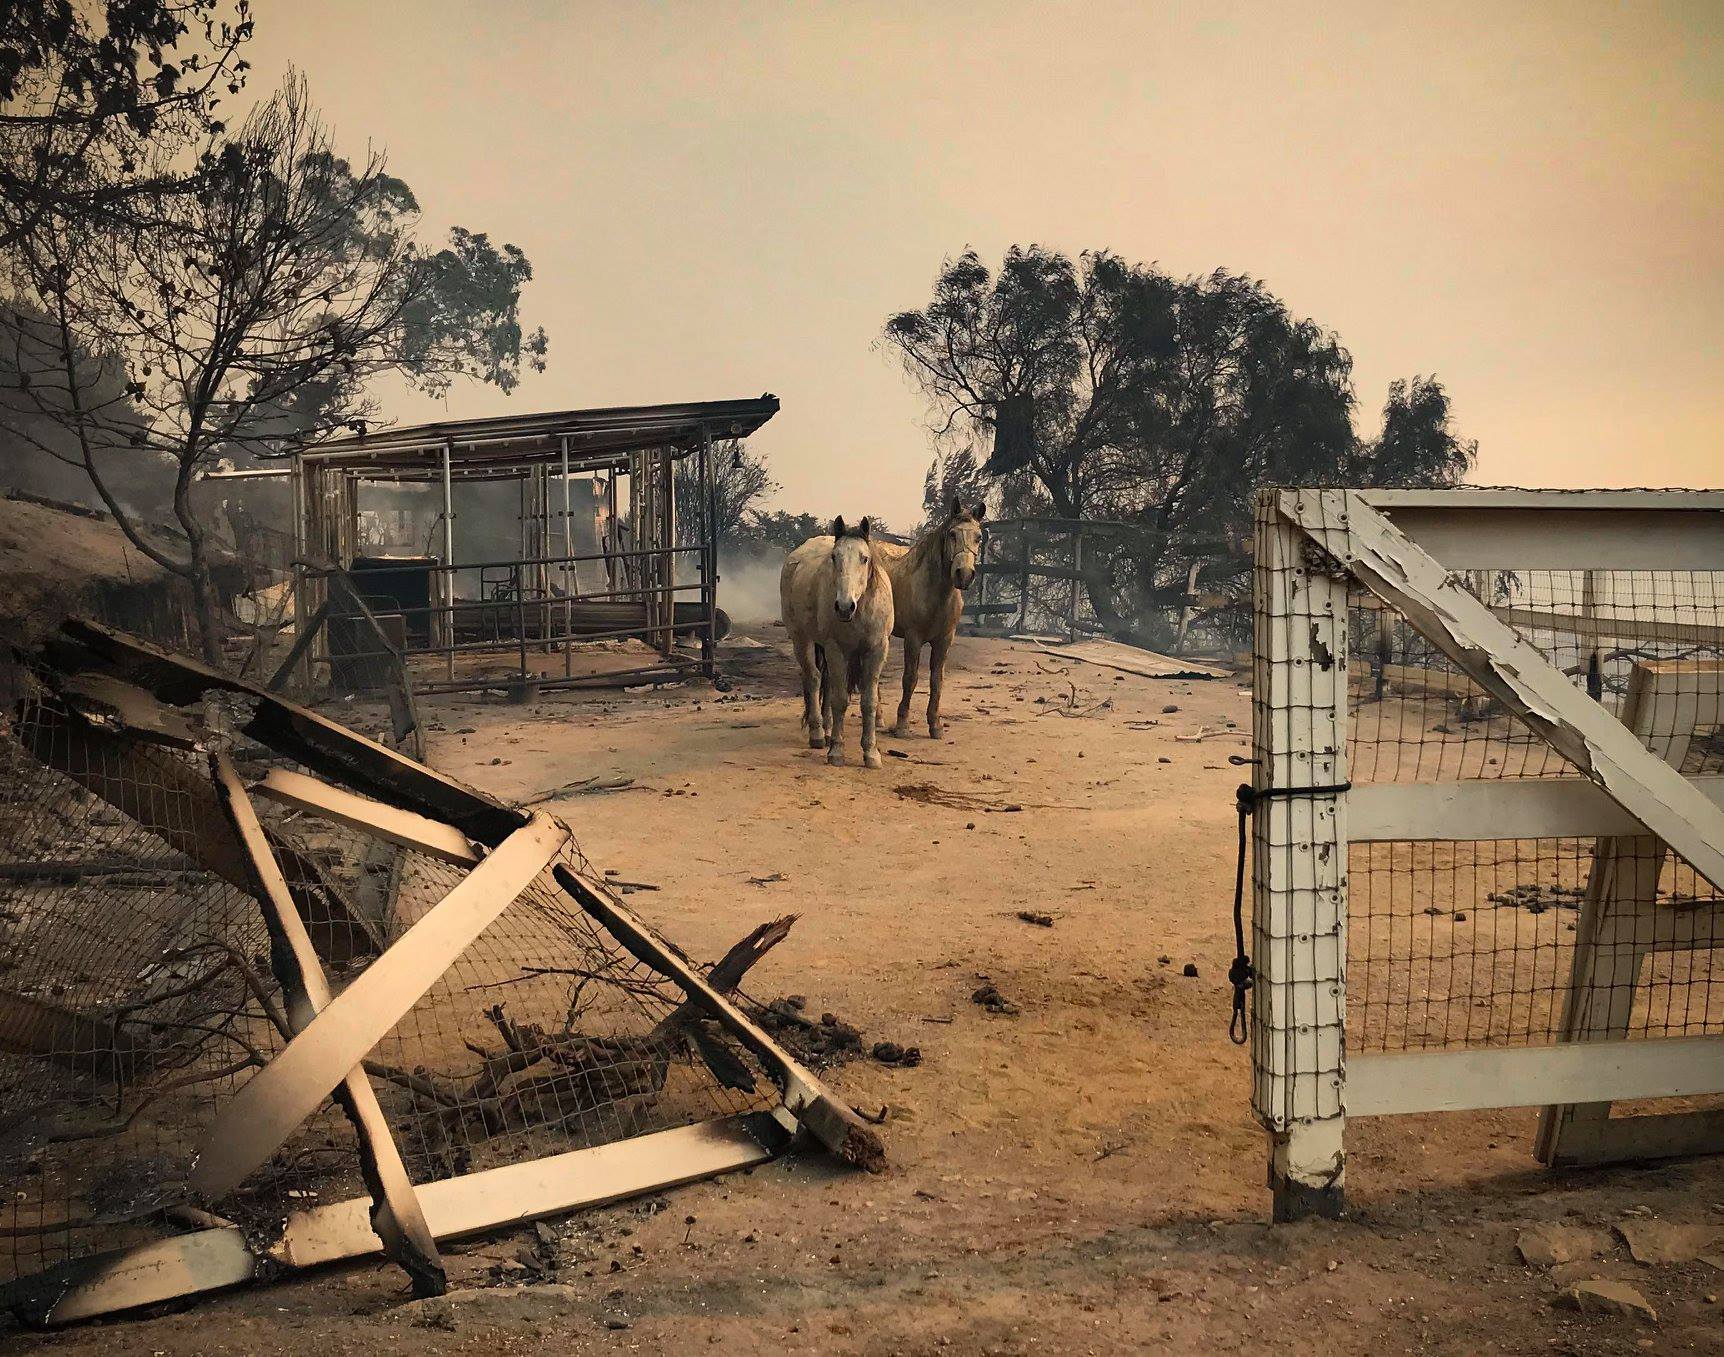 Leégett erdők, házak, istállók és karámok - a tüzet túlélt állatokat el kell látni és biztonságos helyen elhelyezni